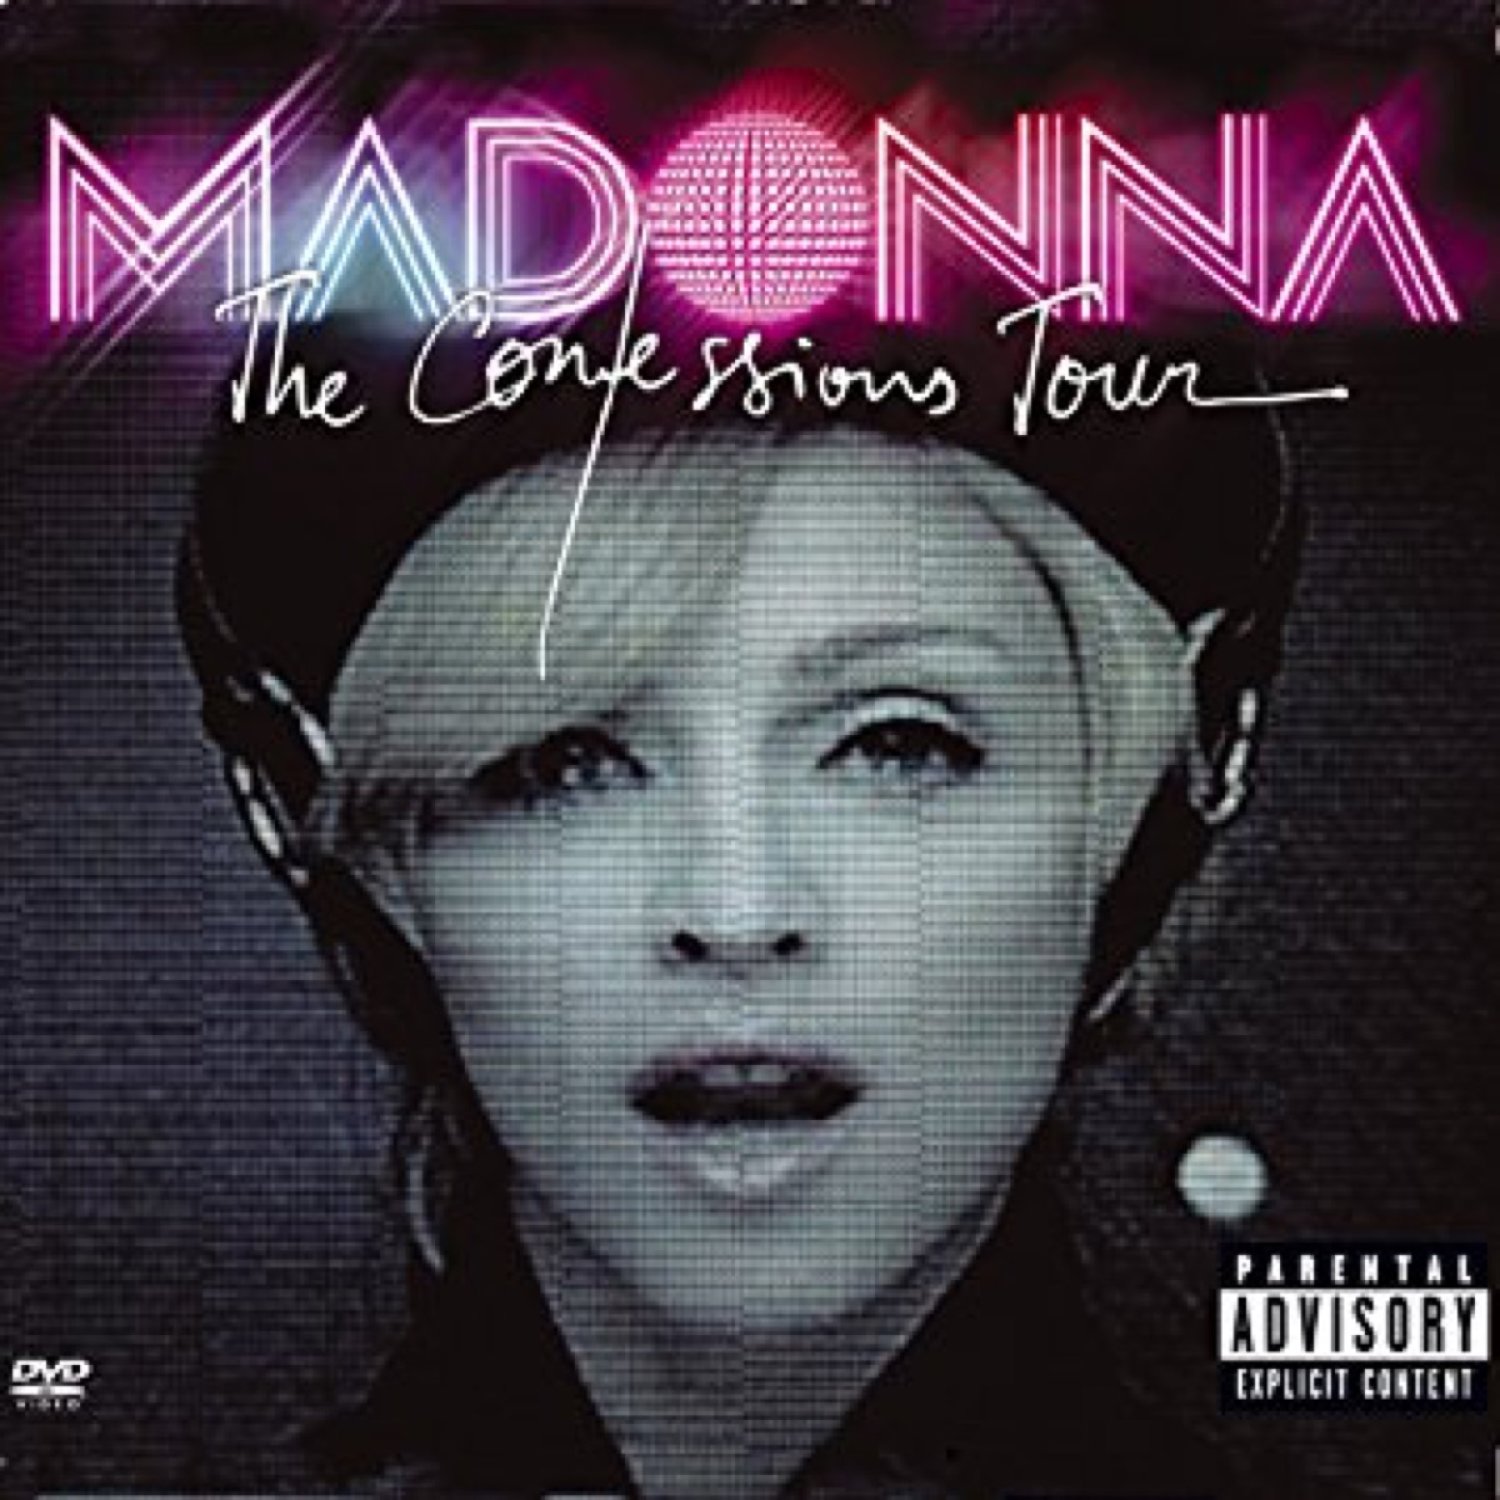 Madonna - Confessions Tour à Paris 2006